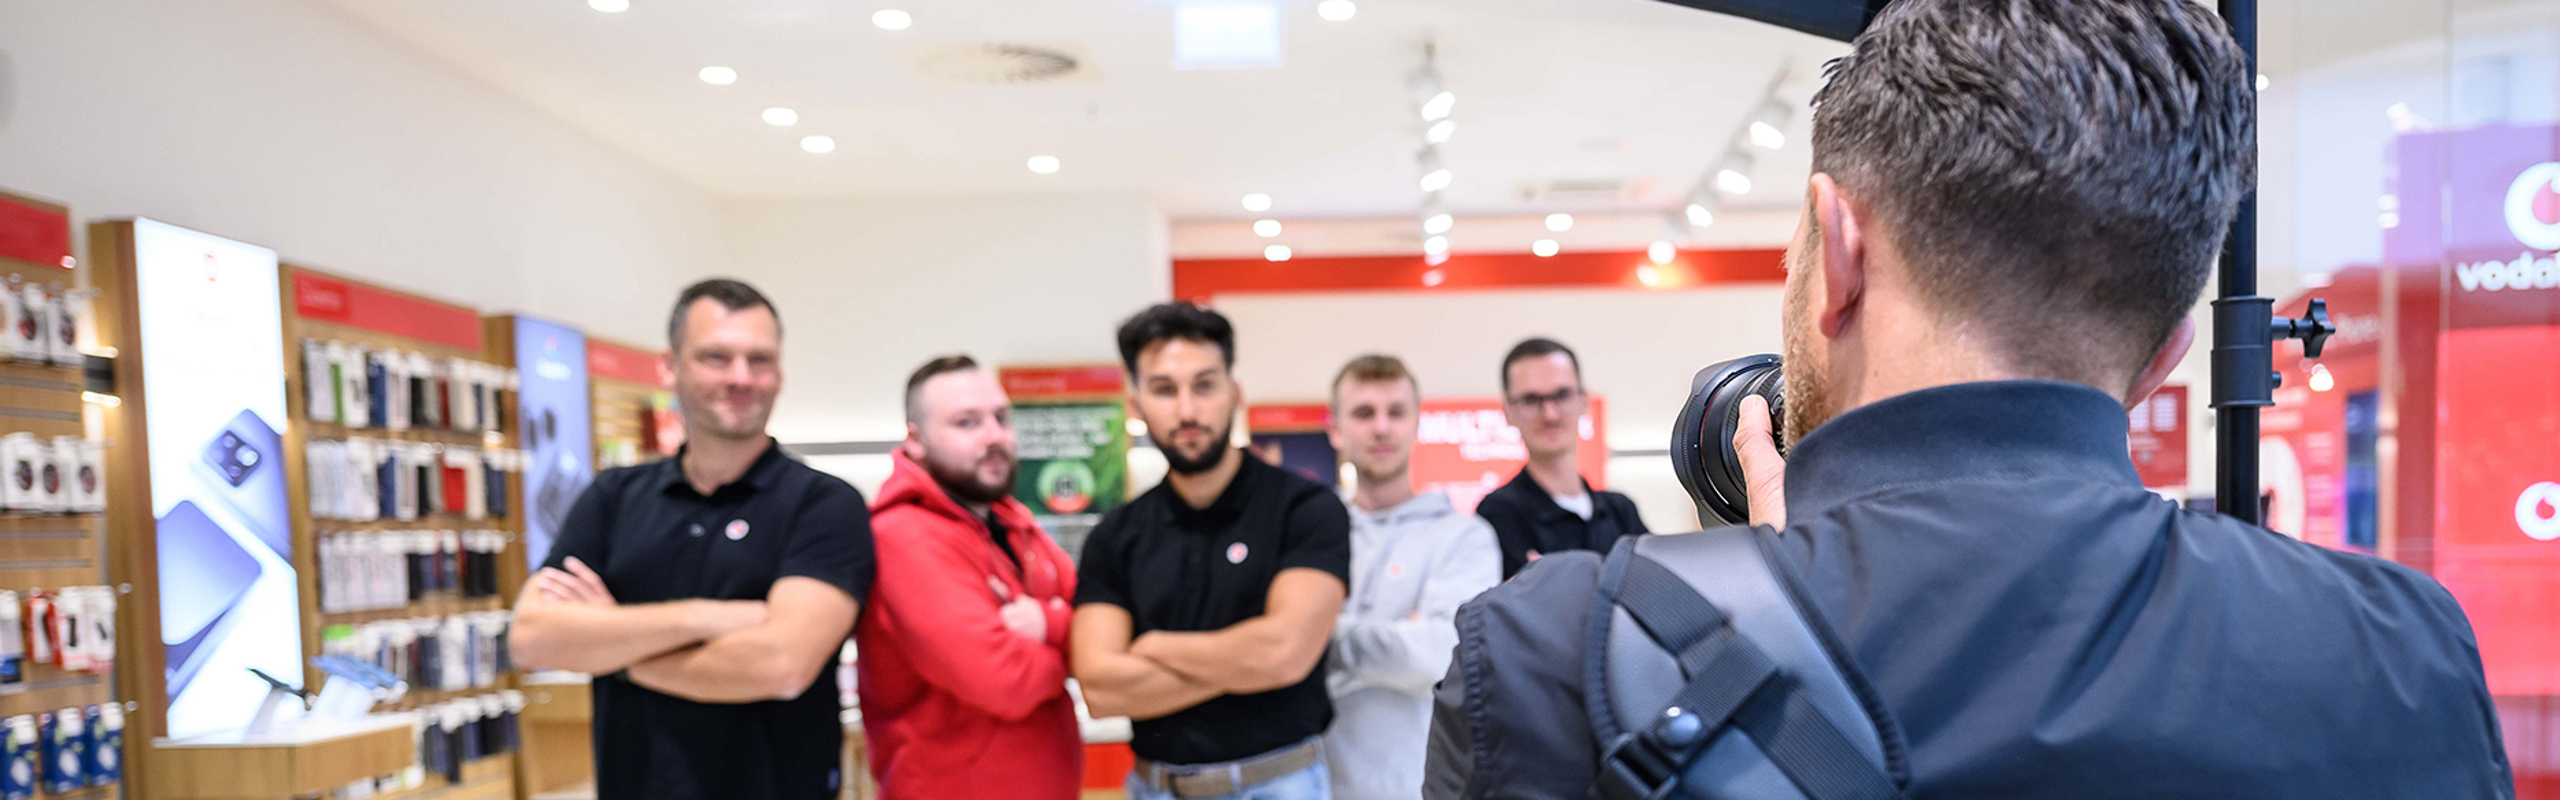 Ein männlicher Fotograf steht mit dem Rücken zum Betrachter und fotografiert eine Gruppe von Mitarbeitenden von Vodafone.